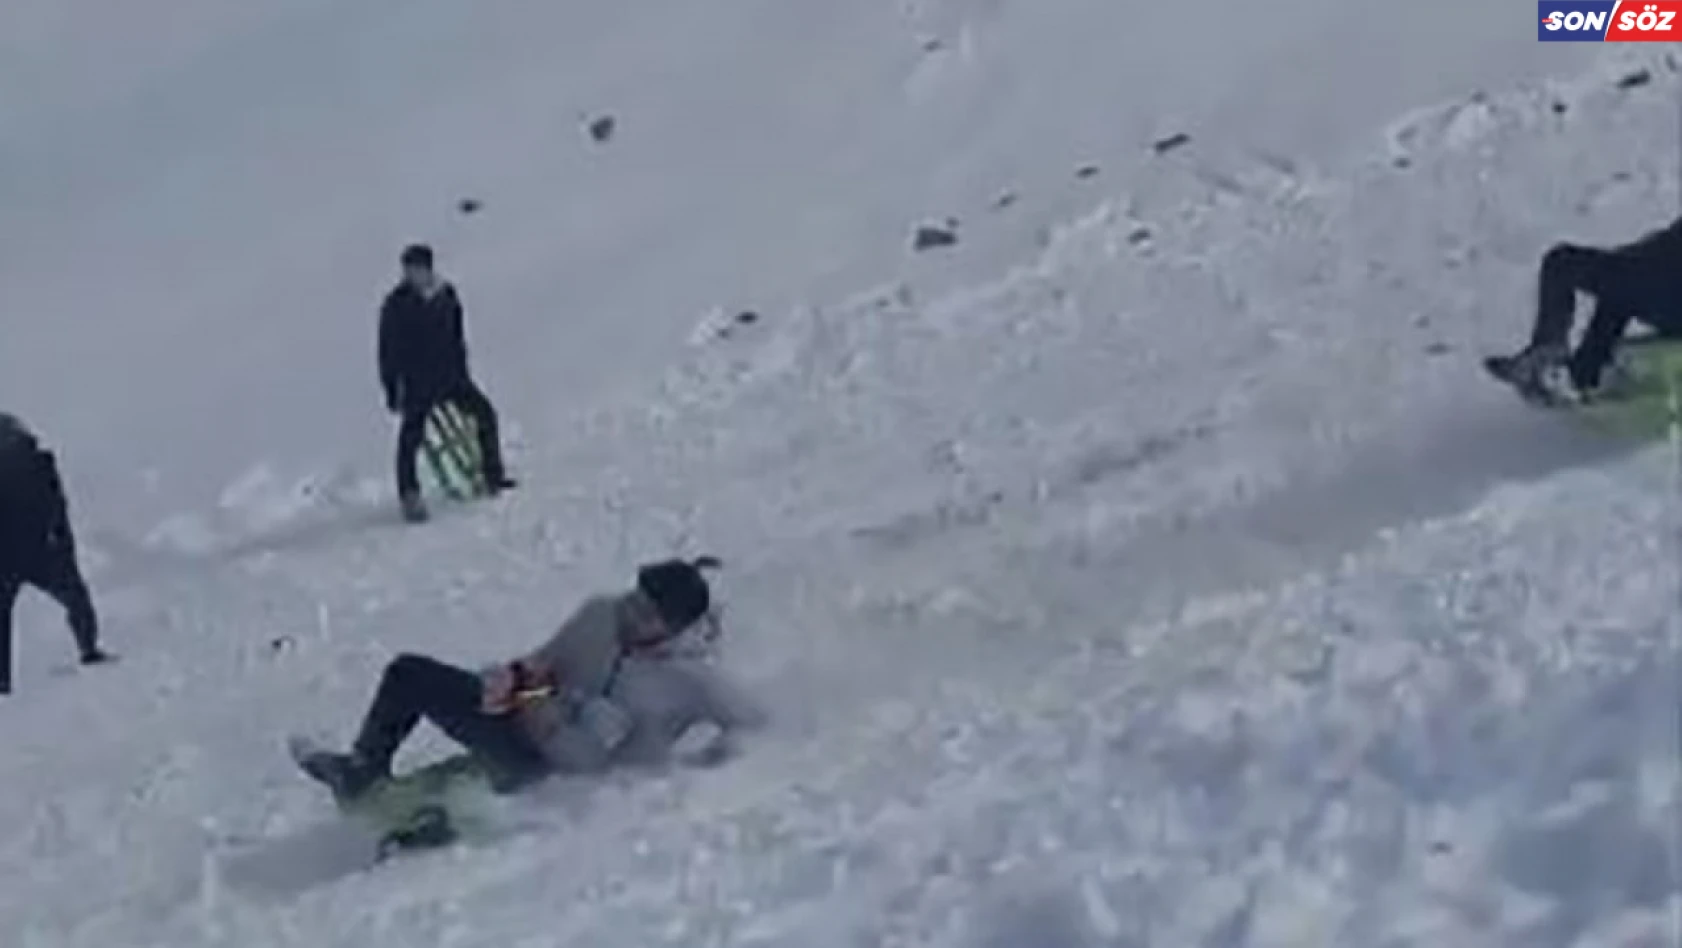 Elazığ'da kayak sezonu açıldı, vatandaşların kızakla kayma anları gülümsetti